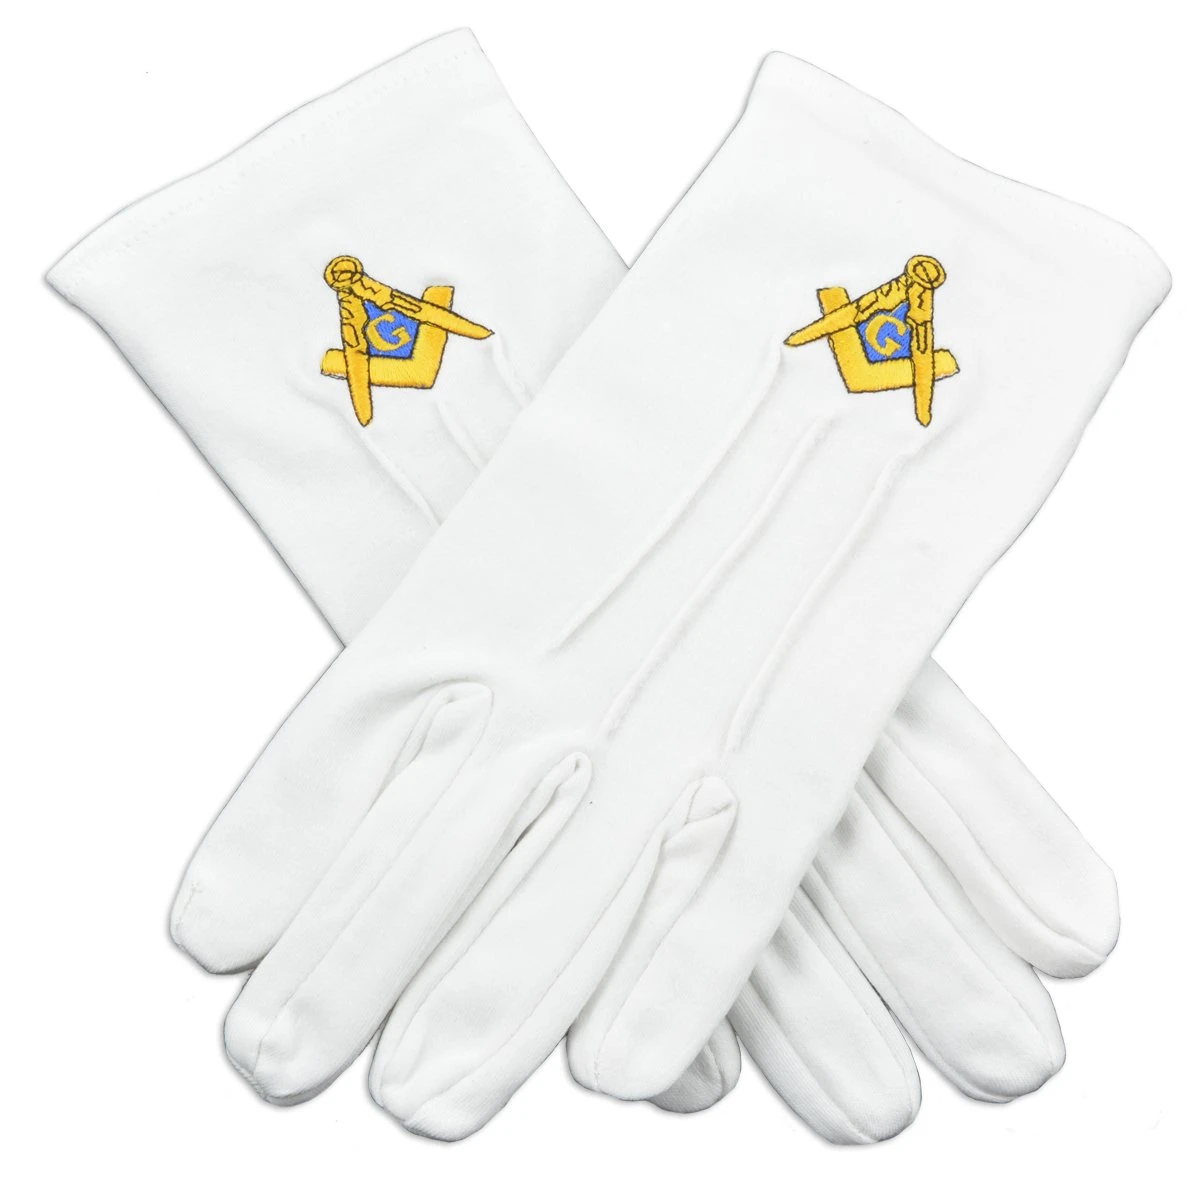 Новые Оптовые хлопковые перчатки масонские перчатки с вышитым логотипом дышащие быстросохнущие простые белые масонские перчатки OEM Индивидуальные